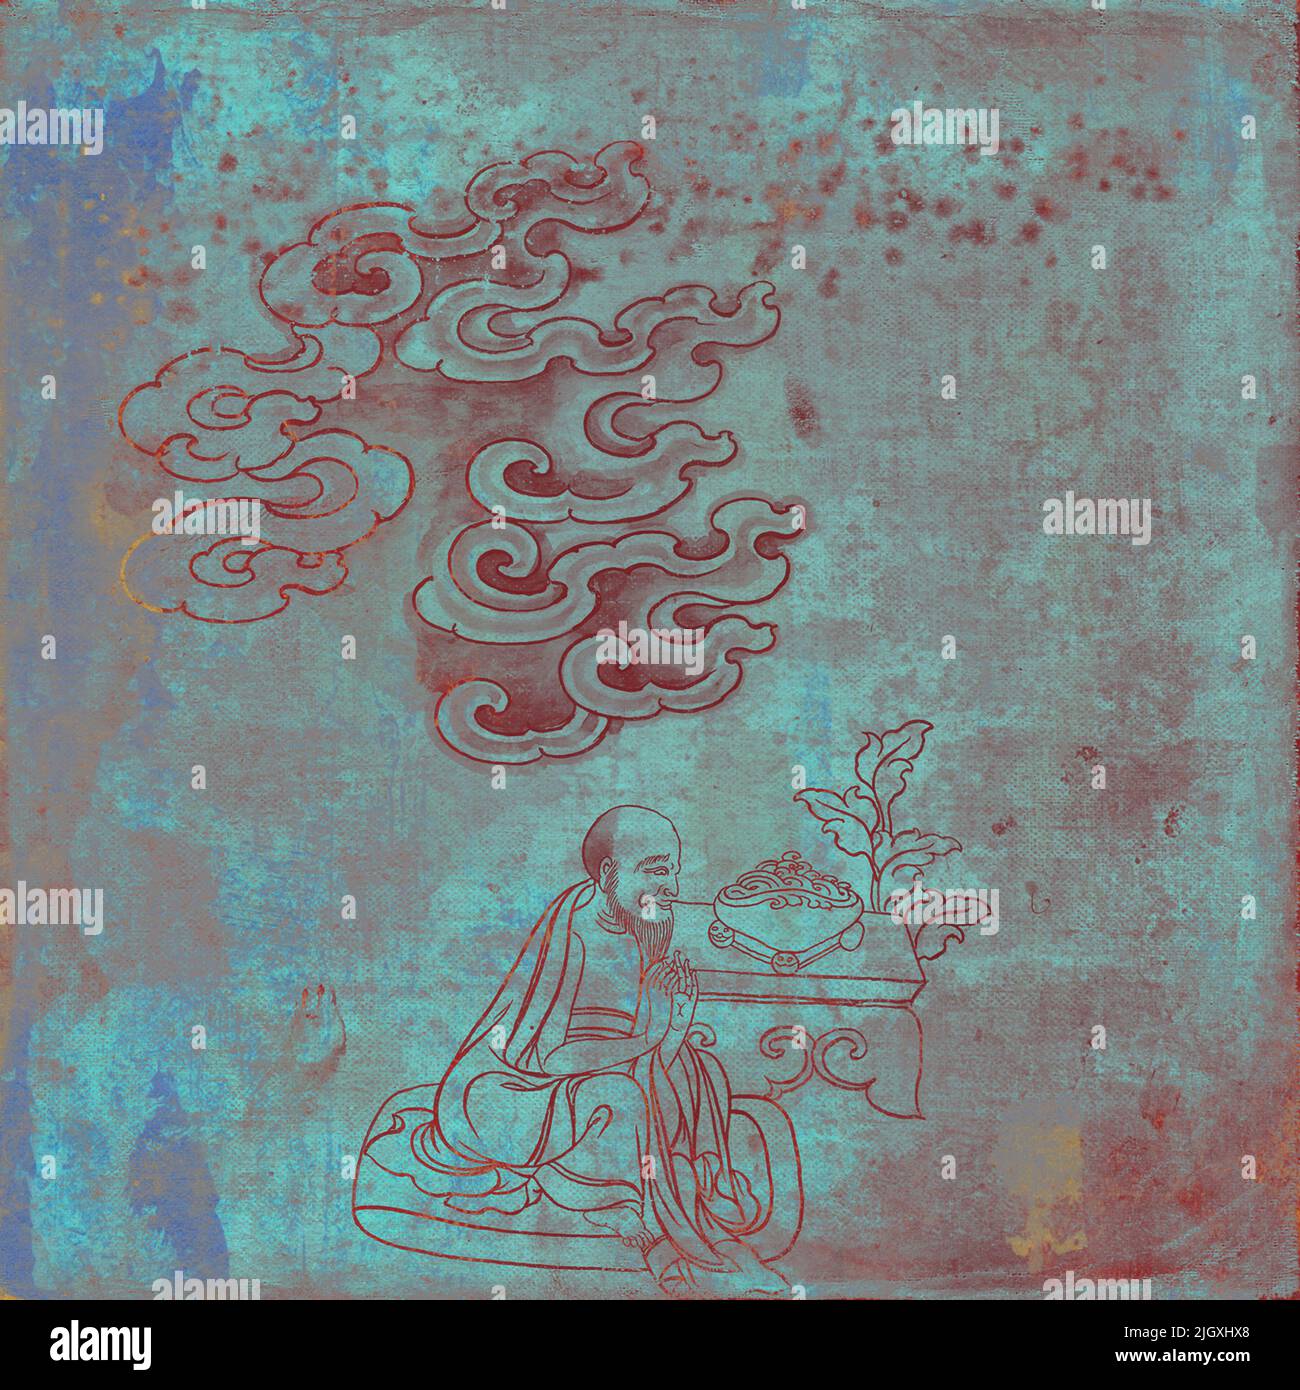 Ilustraciones antiguas de buda grunge con colores y texturas abstractas. Anciano ofreciendo bendición antes de comer, Foto de stock